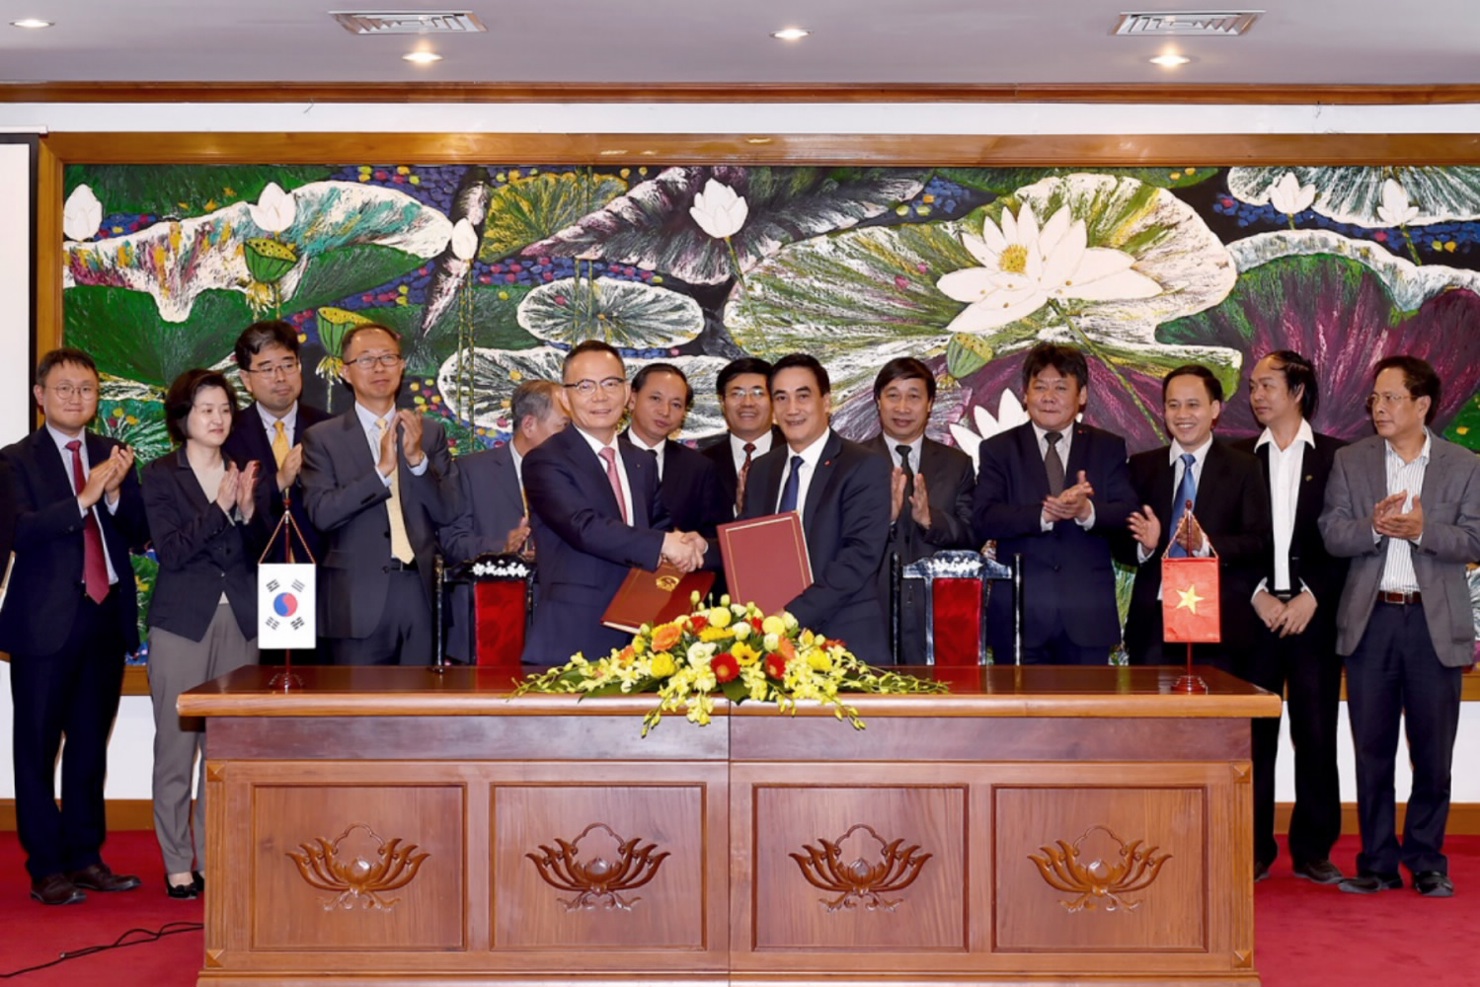 Thứ trưởng Bộ Tài chính Trần Xuân Hà (bên phải) và Phó chủ tịch Ngân hàng Xuất nhập khẩu Hàn Quốc Hong Young - Pyo cùng ký kết hiệp định vay. Nguồn: internet